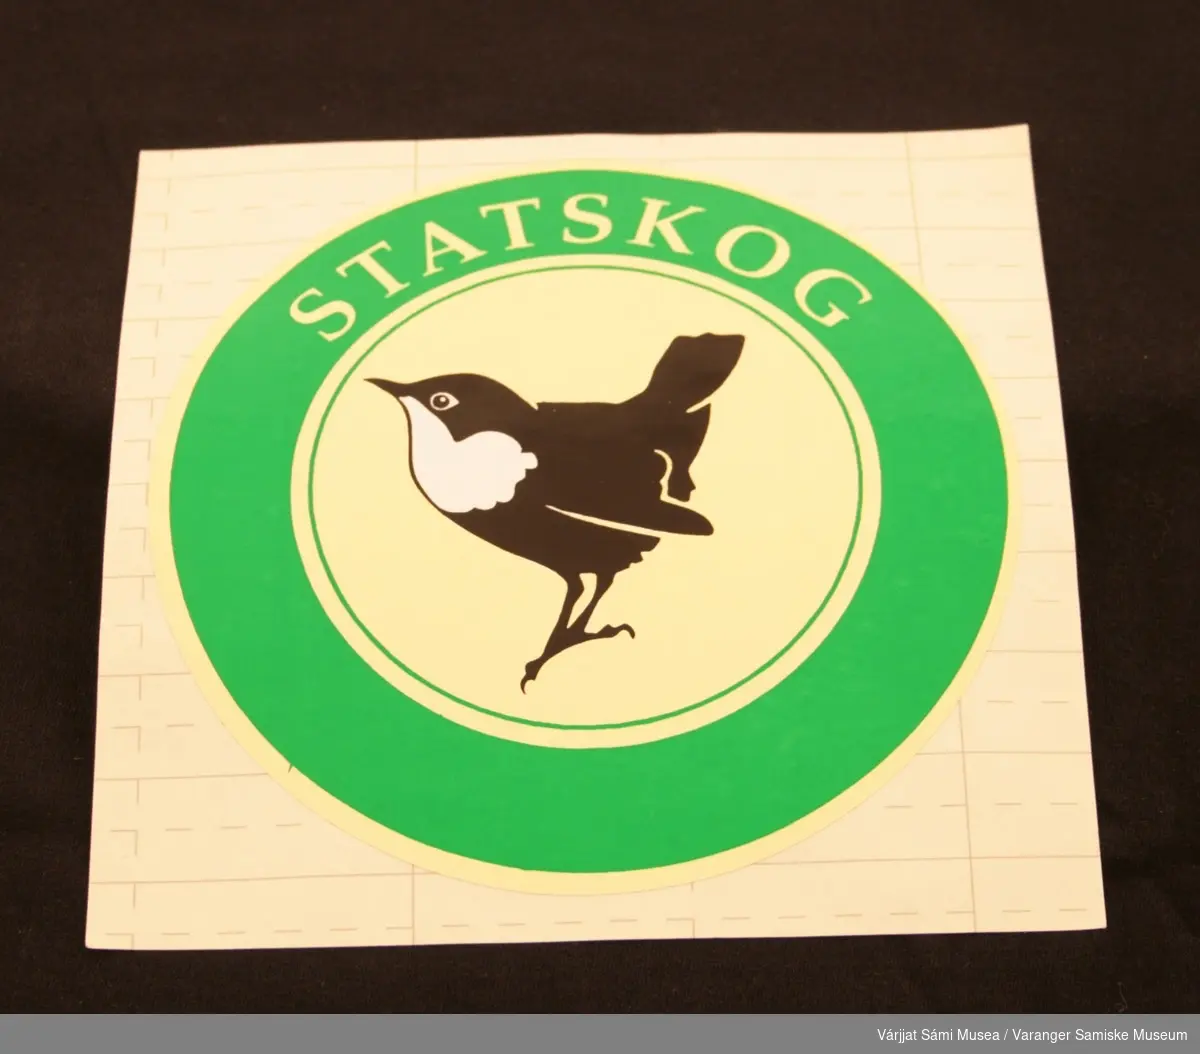 To runde klistremerker med Statskog logo: Fossekall i midten på lysegul bakgrunn, omgitt av en grønn sirkel med påskriften "Statskog" med lysegule bokstaver.